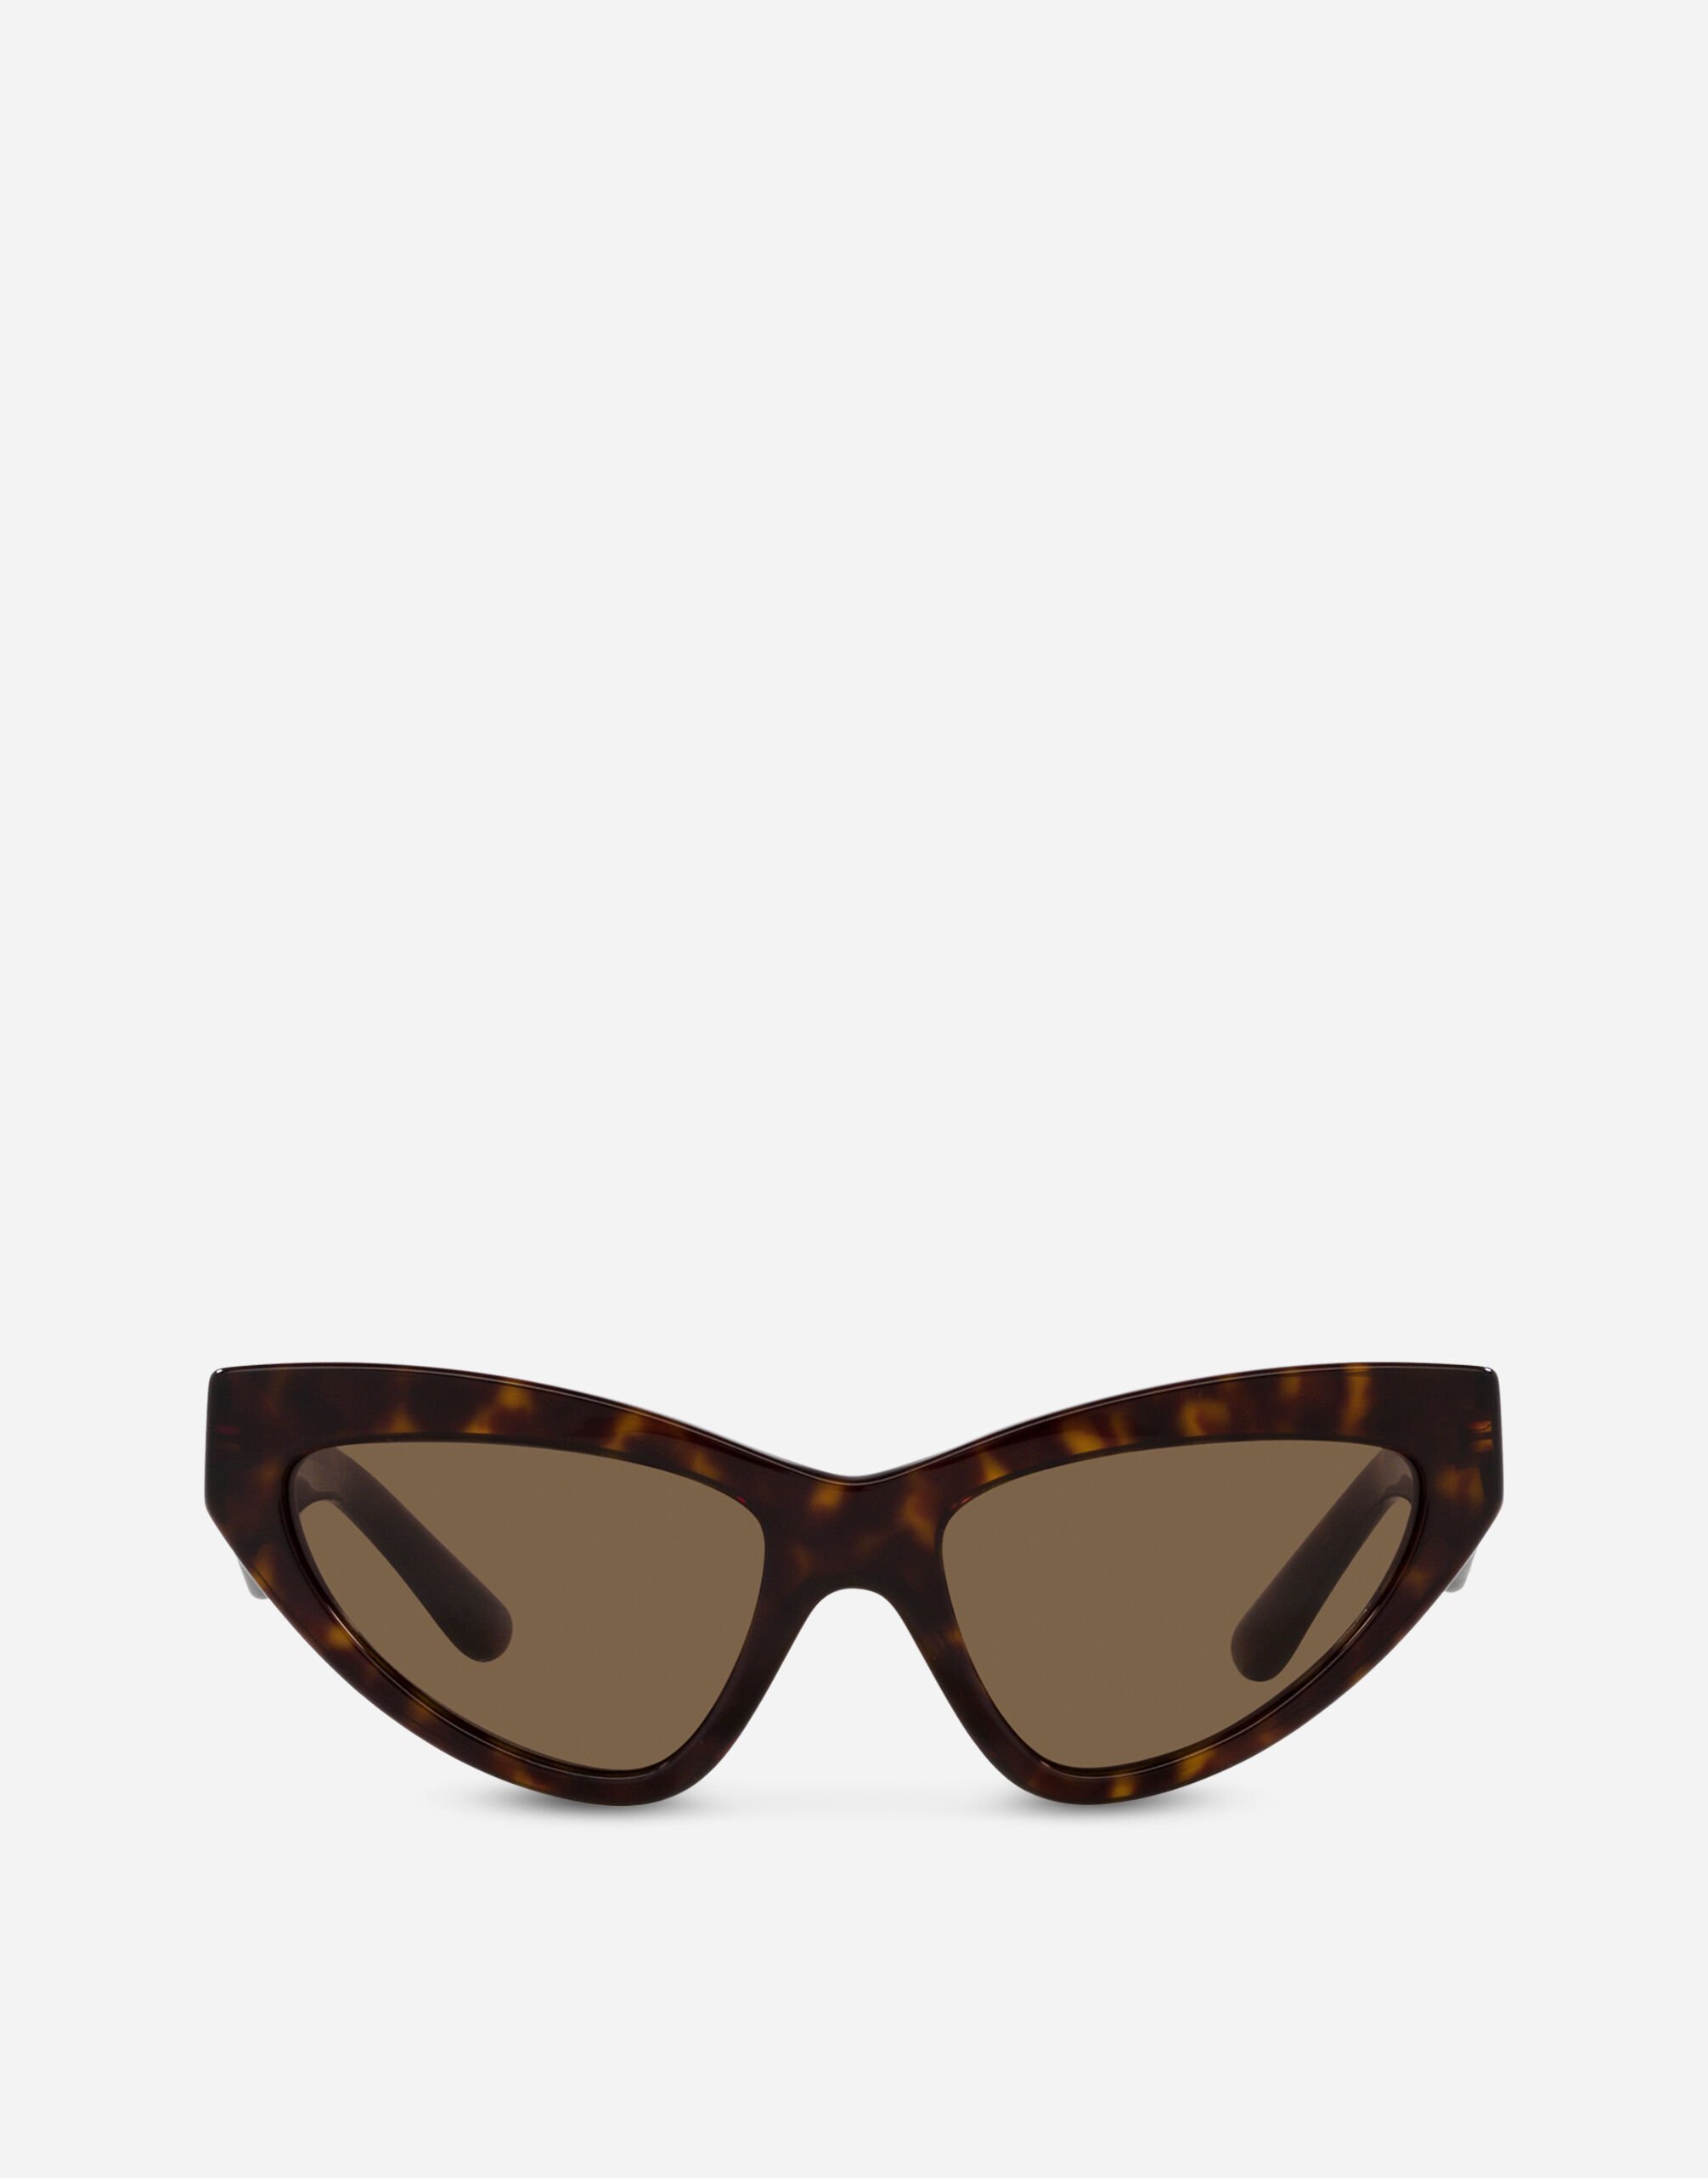 Dolce & Gabbana DG Crossed Sunglasses Black VG6144VN18G